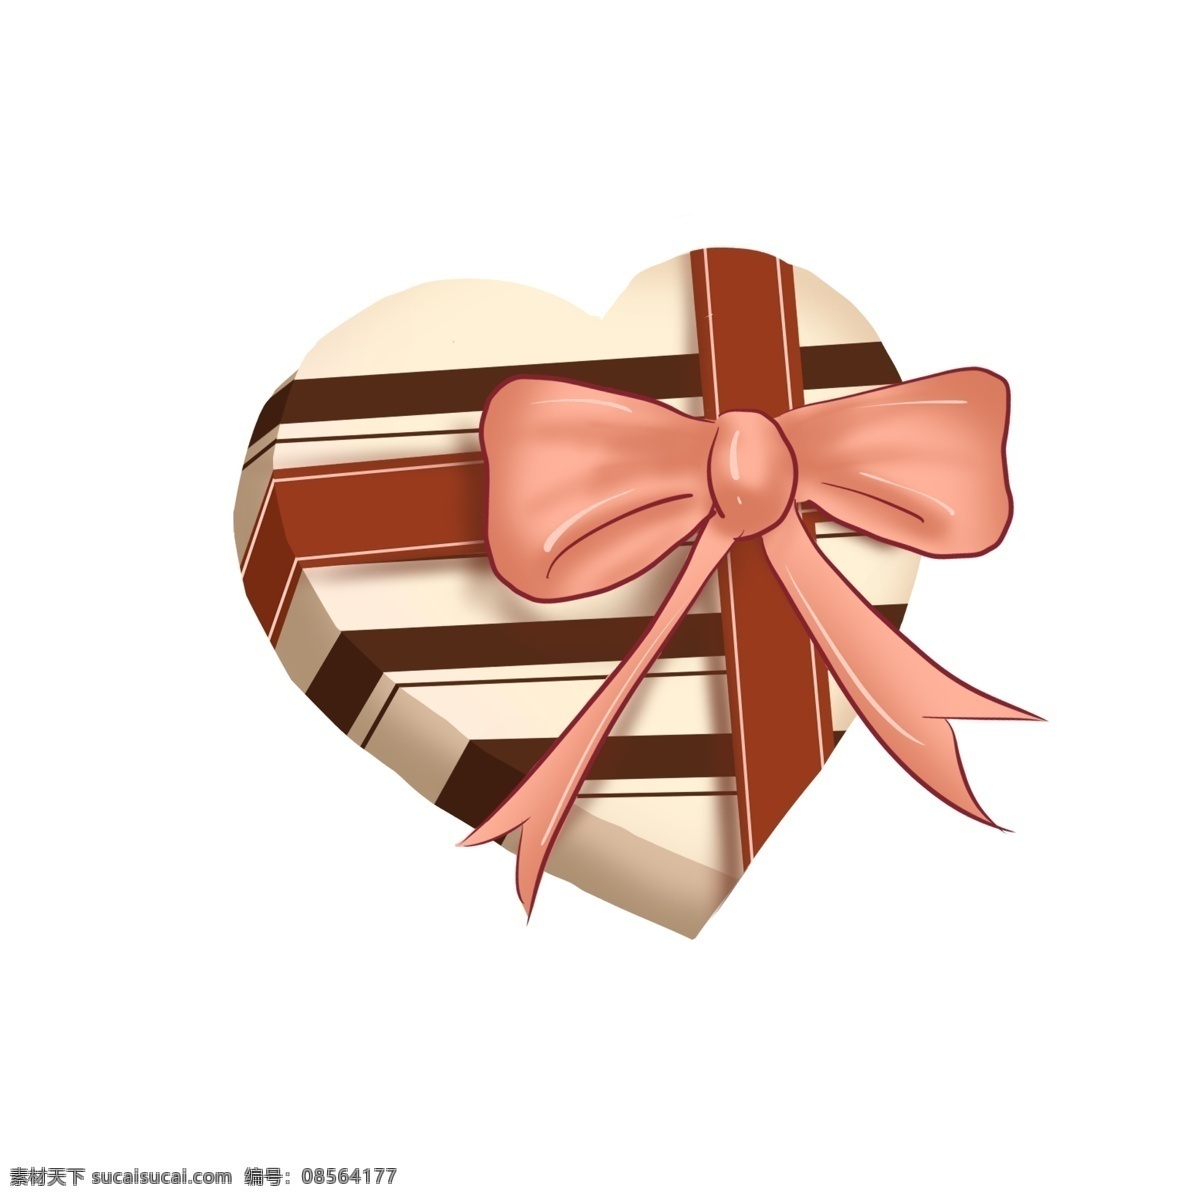 手绘 心形 礼盒 插画 礼物盒 情人节 爱情 蝴蝶结 心形礼盒 礼物盒插画 巧克力 礼物